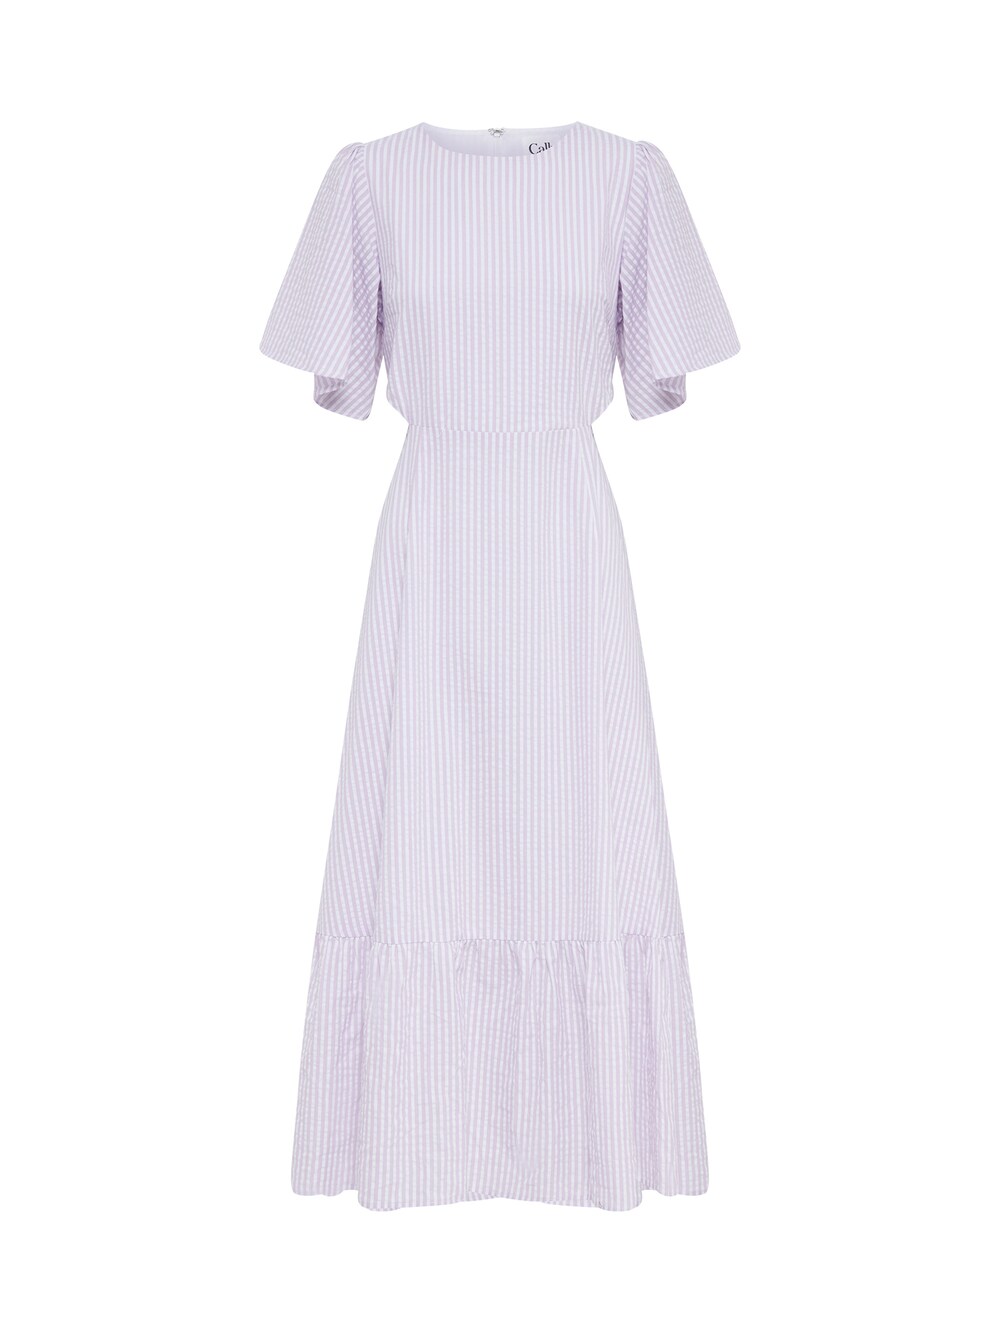 Платье Calli NIKKO, пастельно-фиолетовый/белый